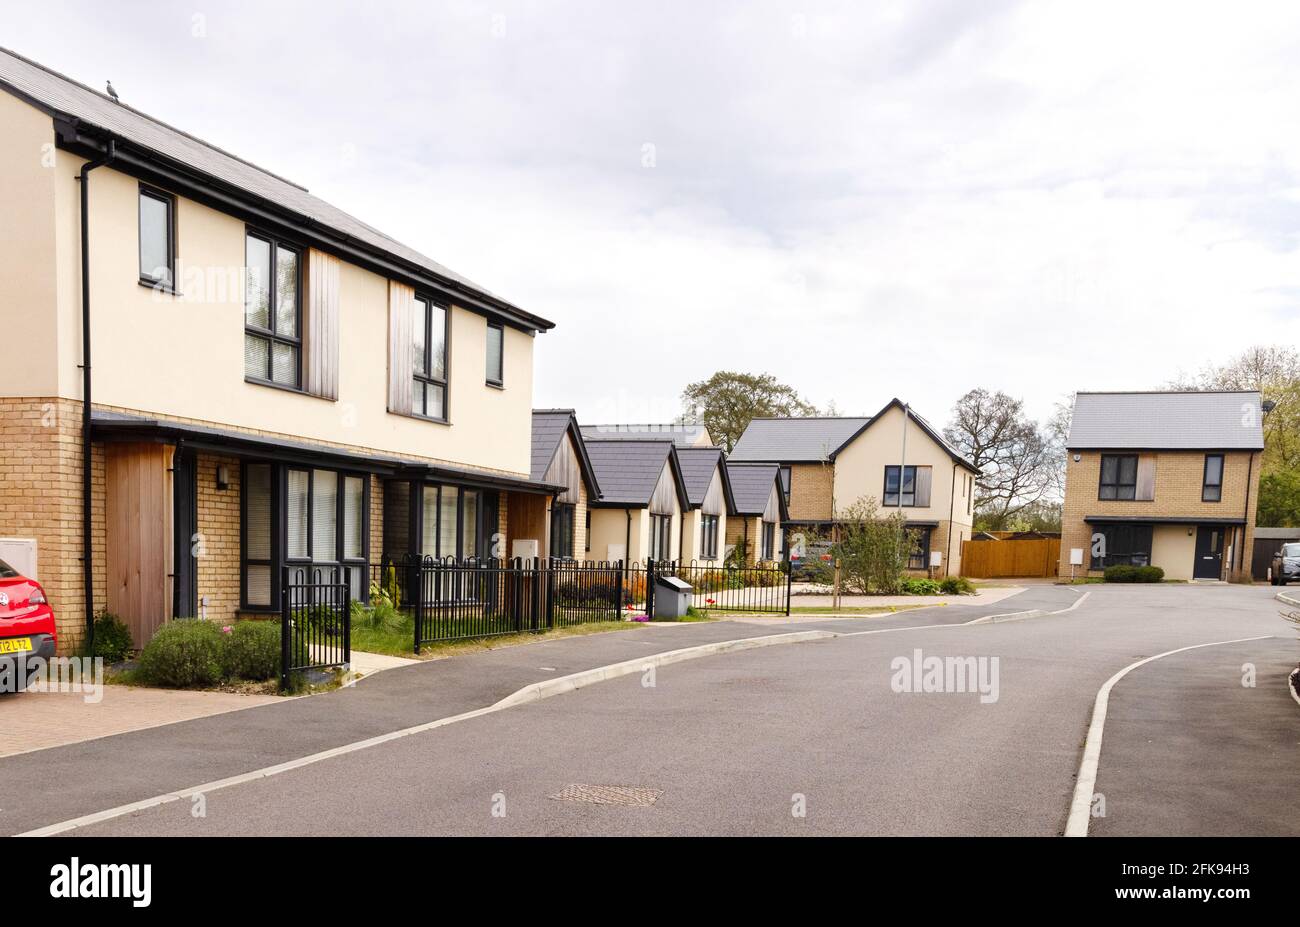 Le Royaume-Uni est un logement du XXIe siècle; de nouvelles maisons sont en développement à Suffolk, au Royaume-Uni Banque D'Images